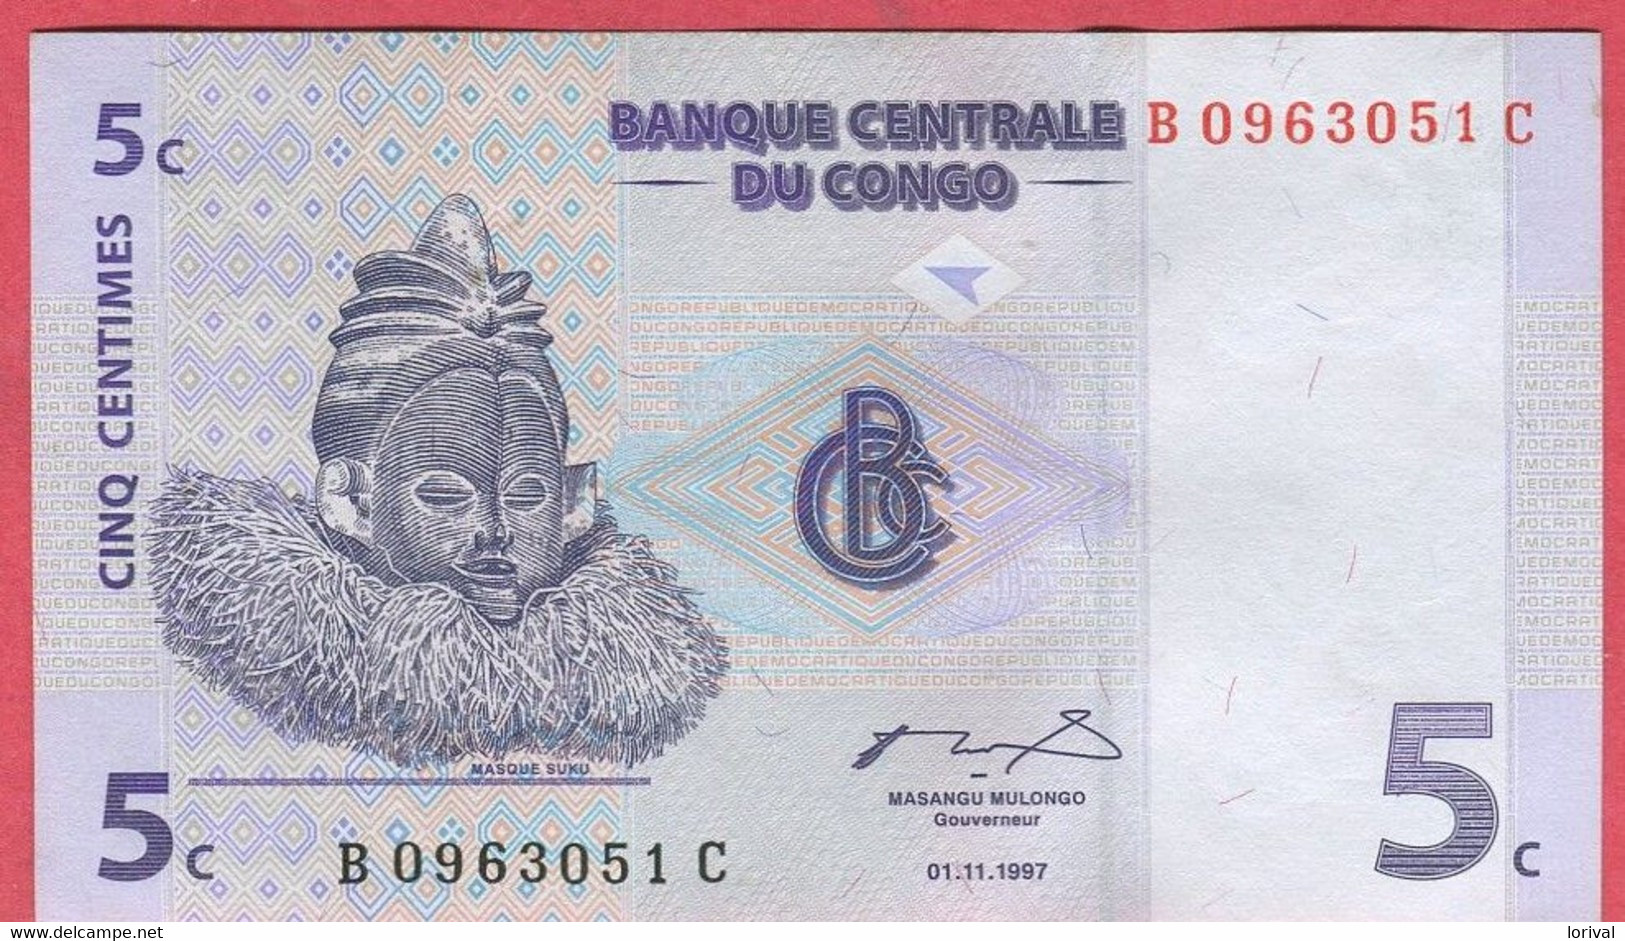 5 Centimes 01/11/97 Neuf 3 Euros - Republic Of Congo (Congo-Brazzaville)